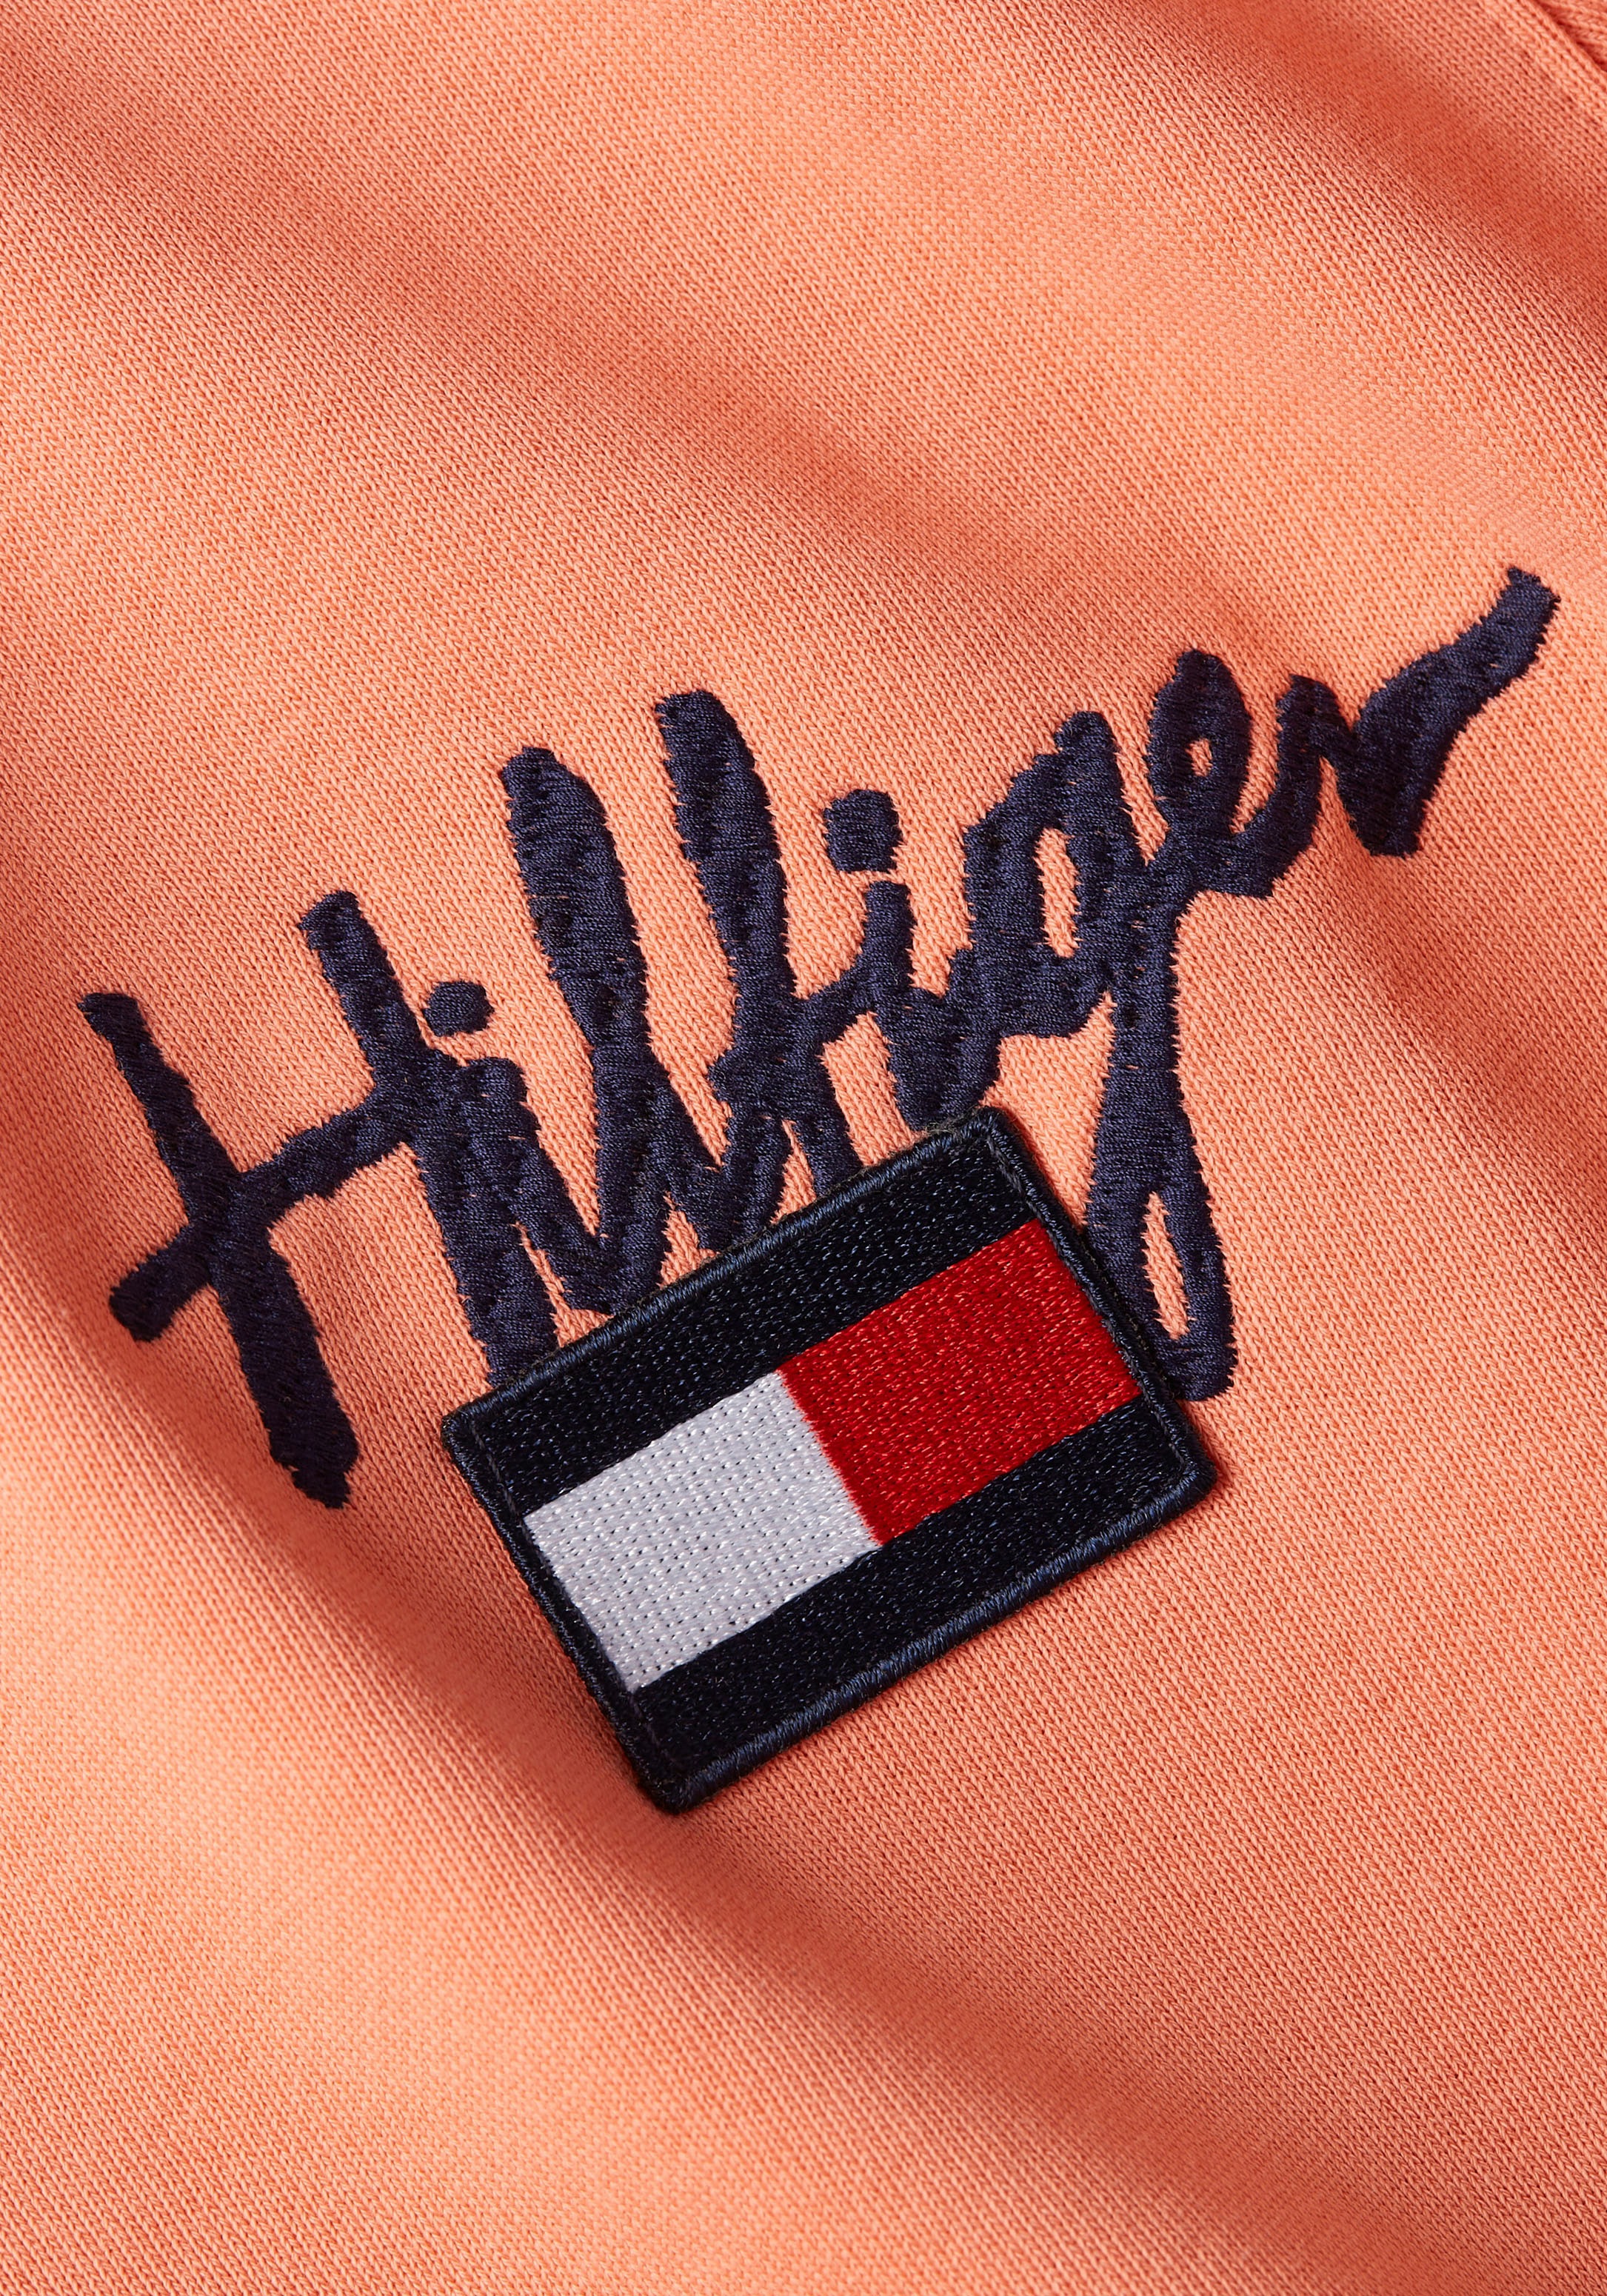 Sweatshirts - Tommy Hilfiger Hilfiger Painted Graphic Crew